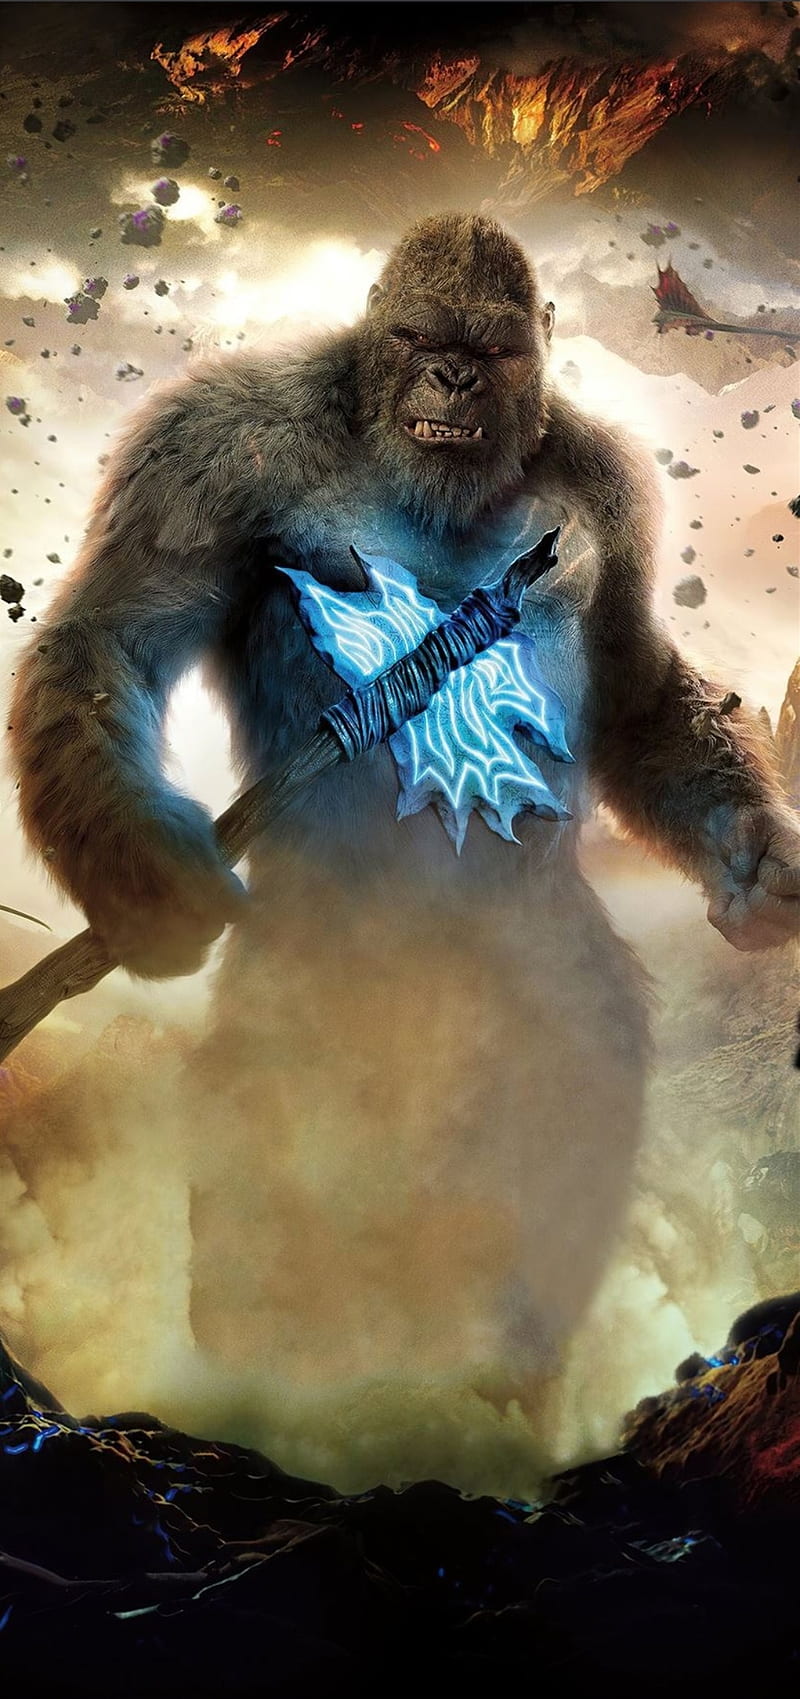 Tiêu đề dự kiến cho phần phim Godzilla vs Kong tiếp theo là Origins